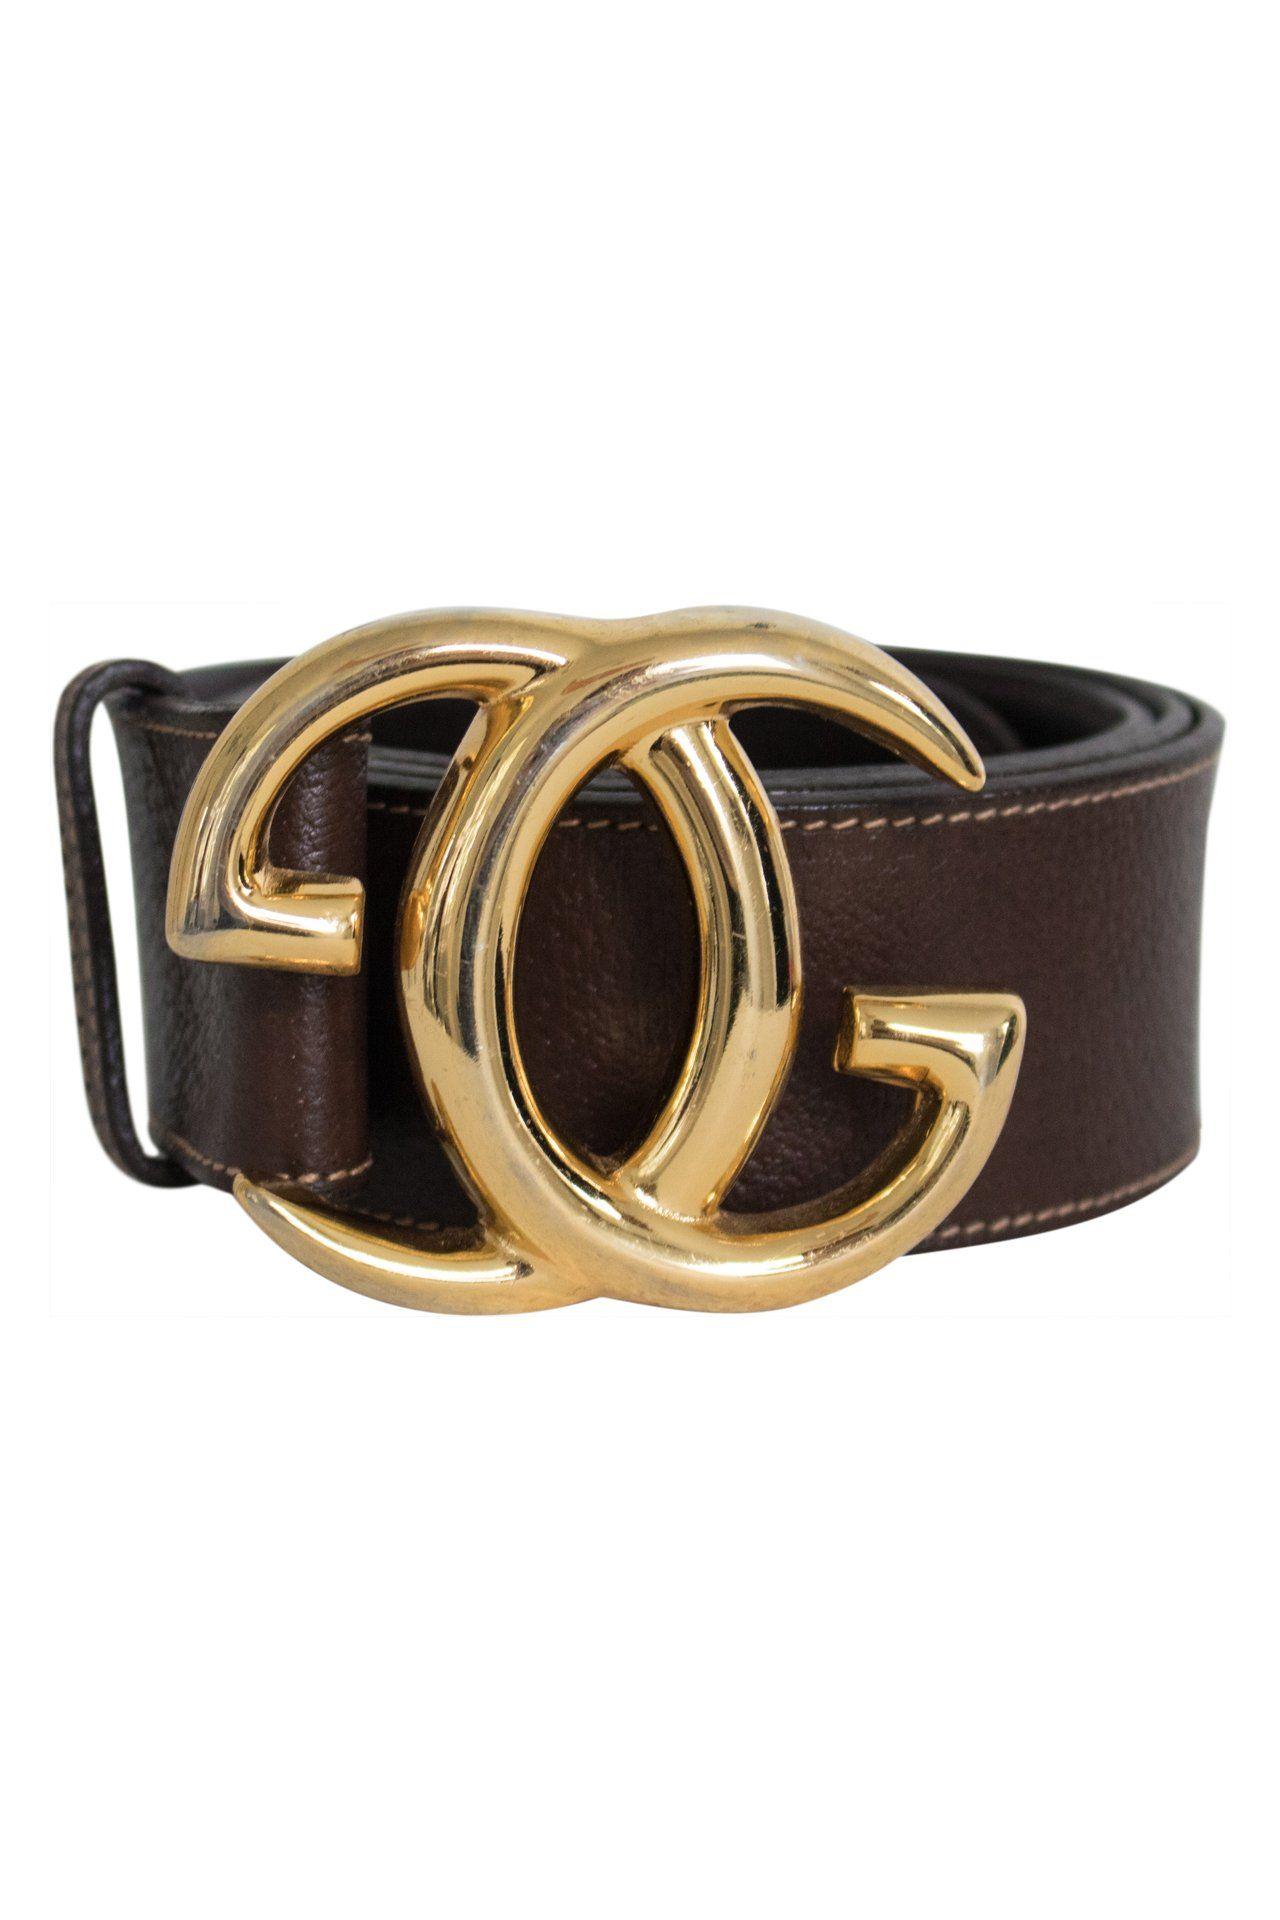 Vintage Gucci Logo - Vintage Gucci Belt- Brown with Large Gold Logo - Mint Market